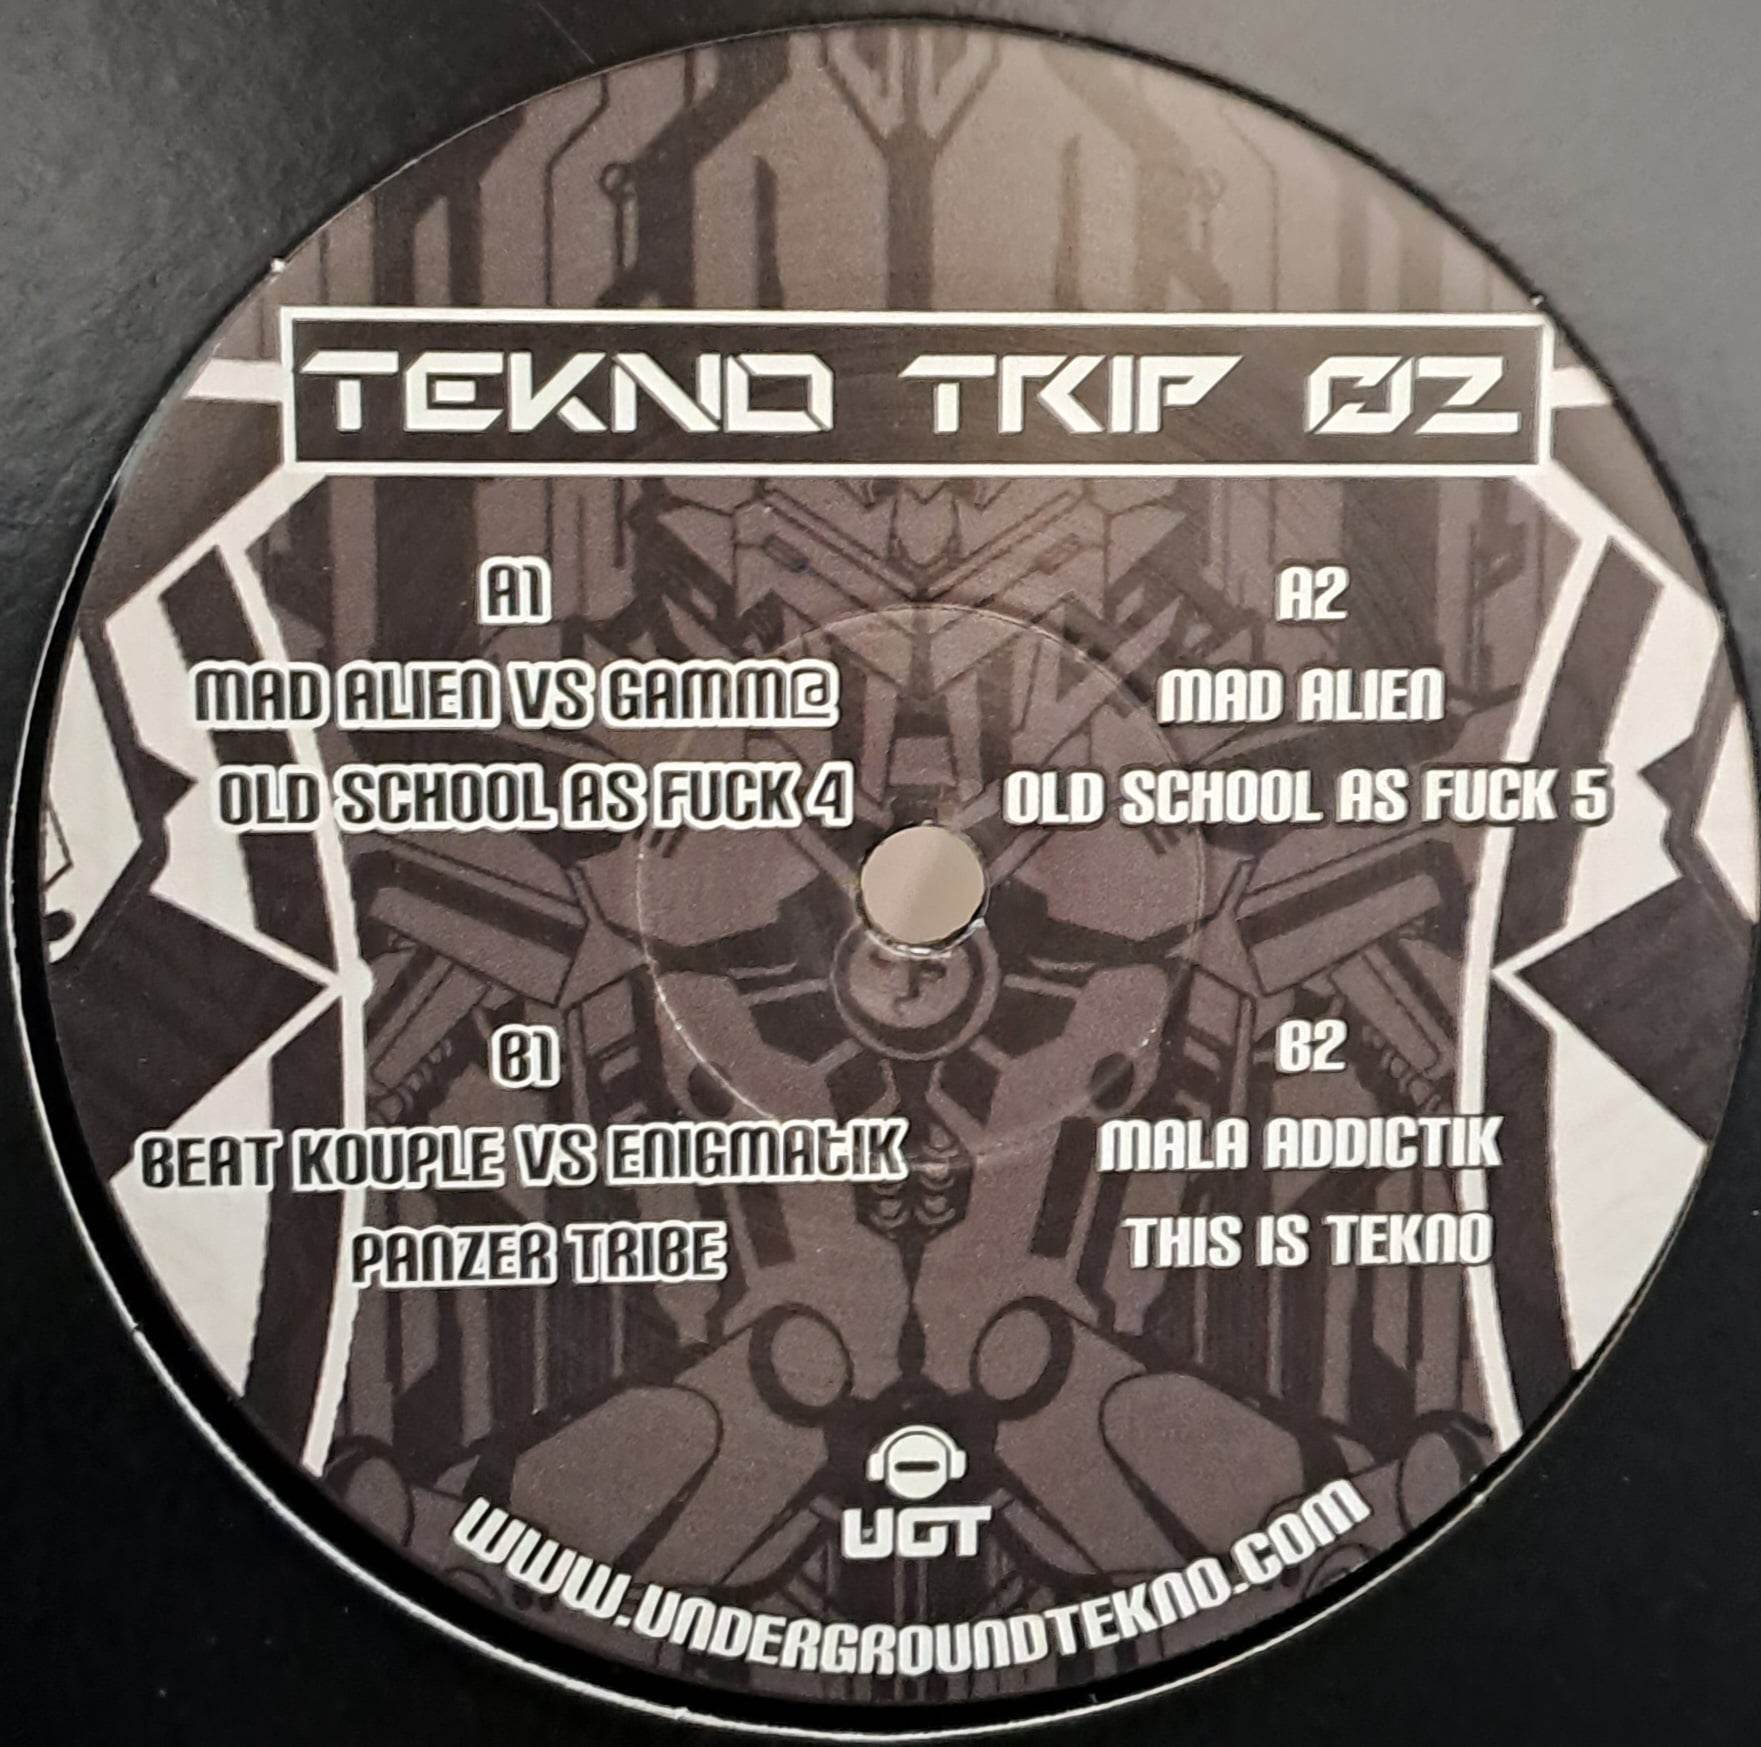 Tekno Trip 02 RP (dernières copies en stock) - vinyle freetekno